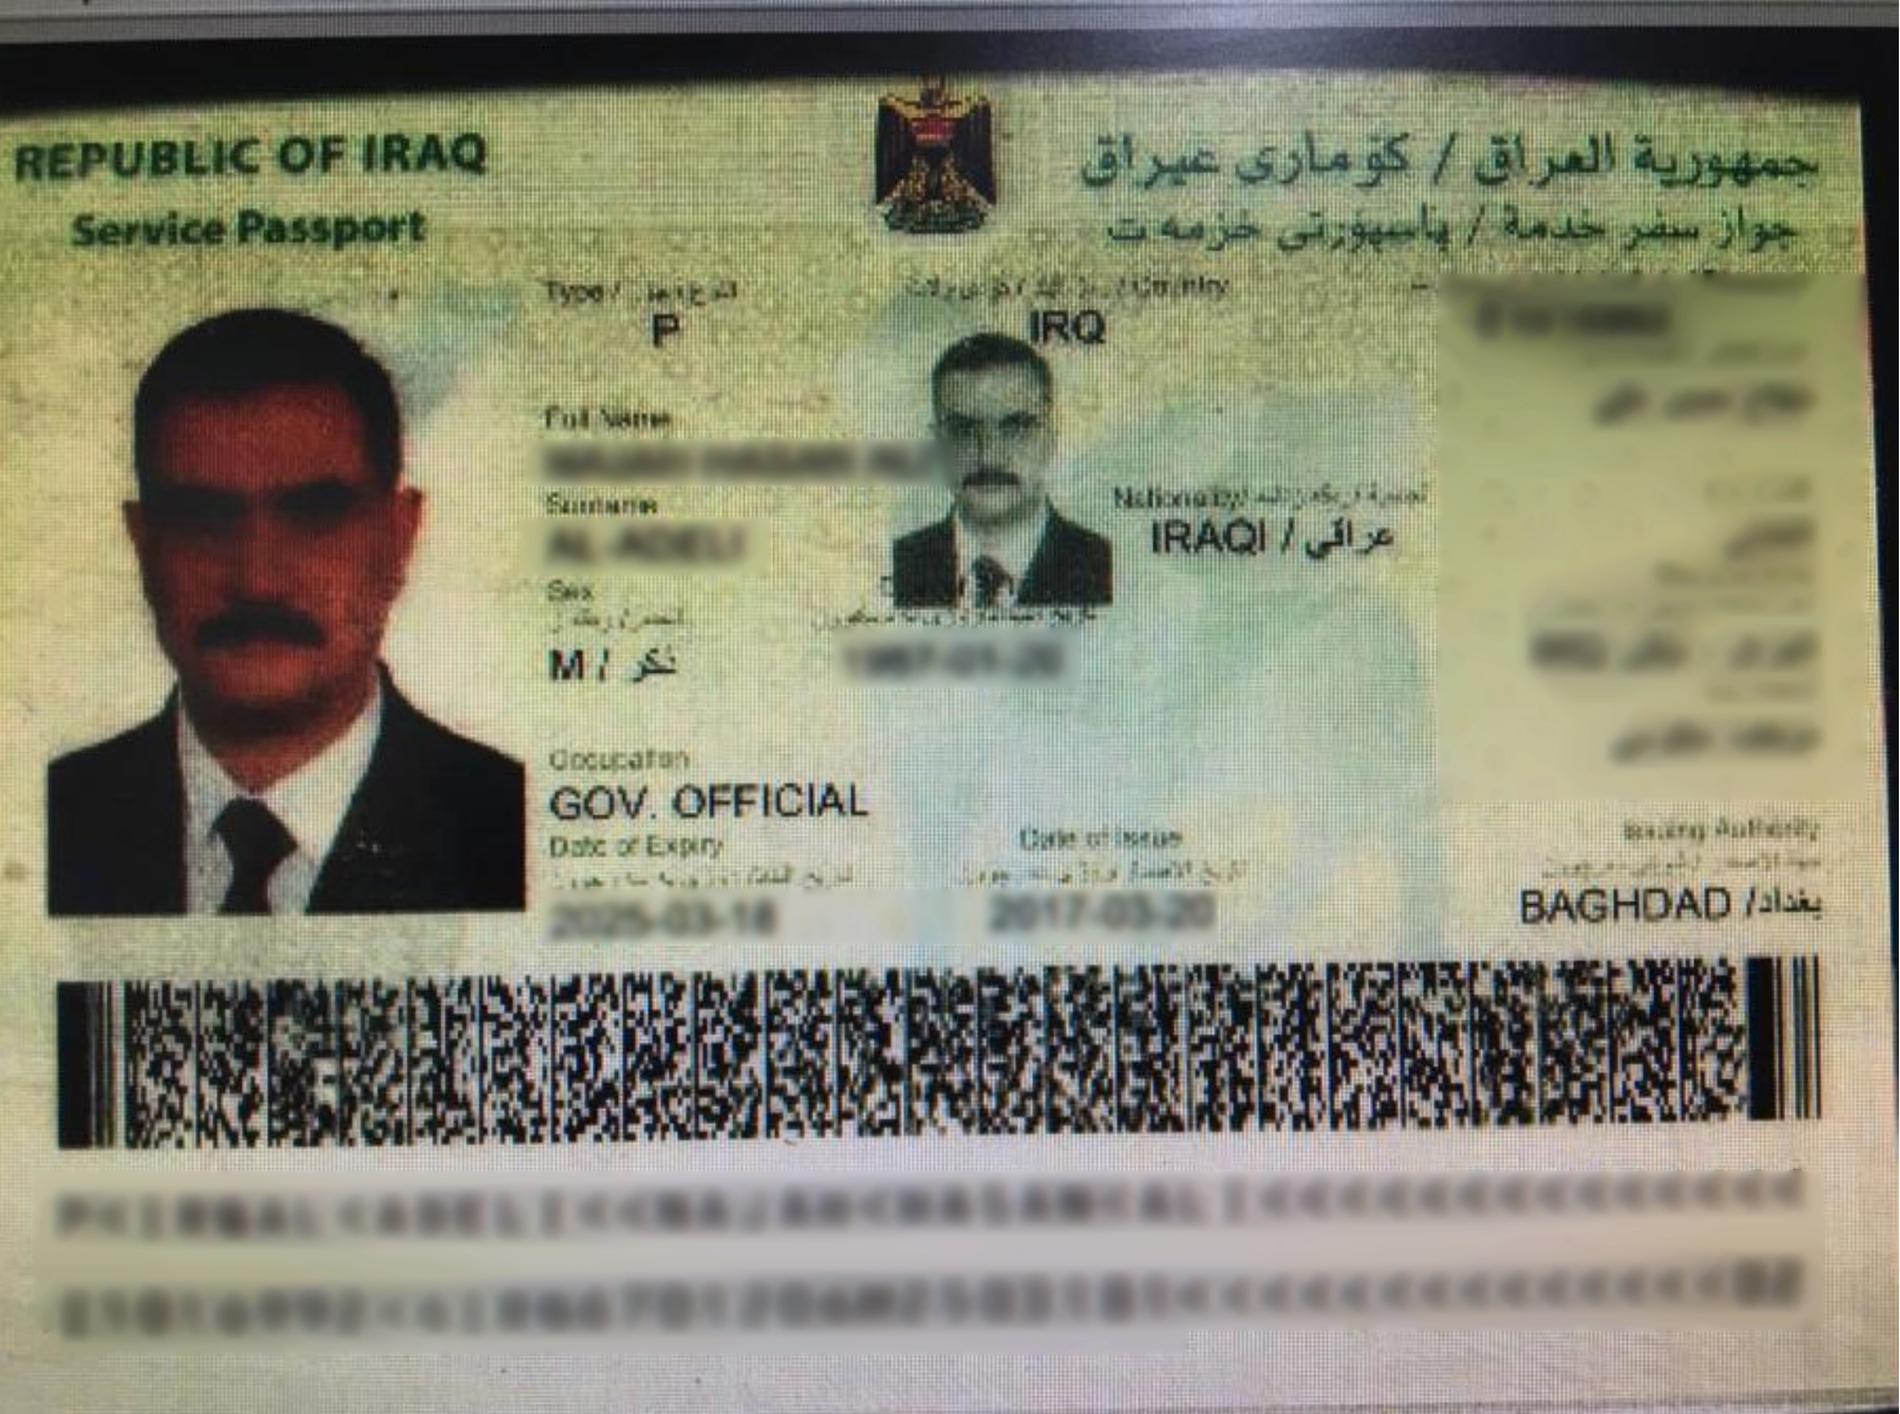 Mannens irakiska pass.